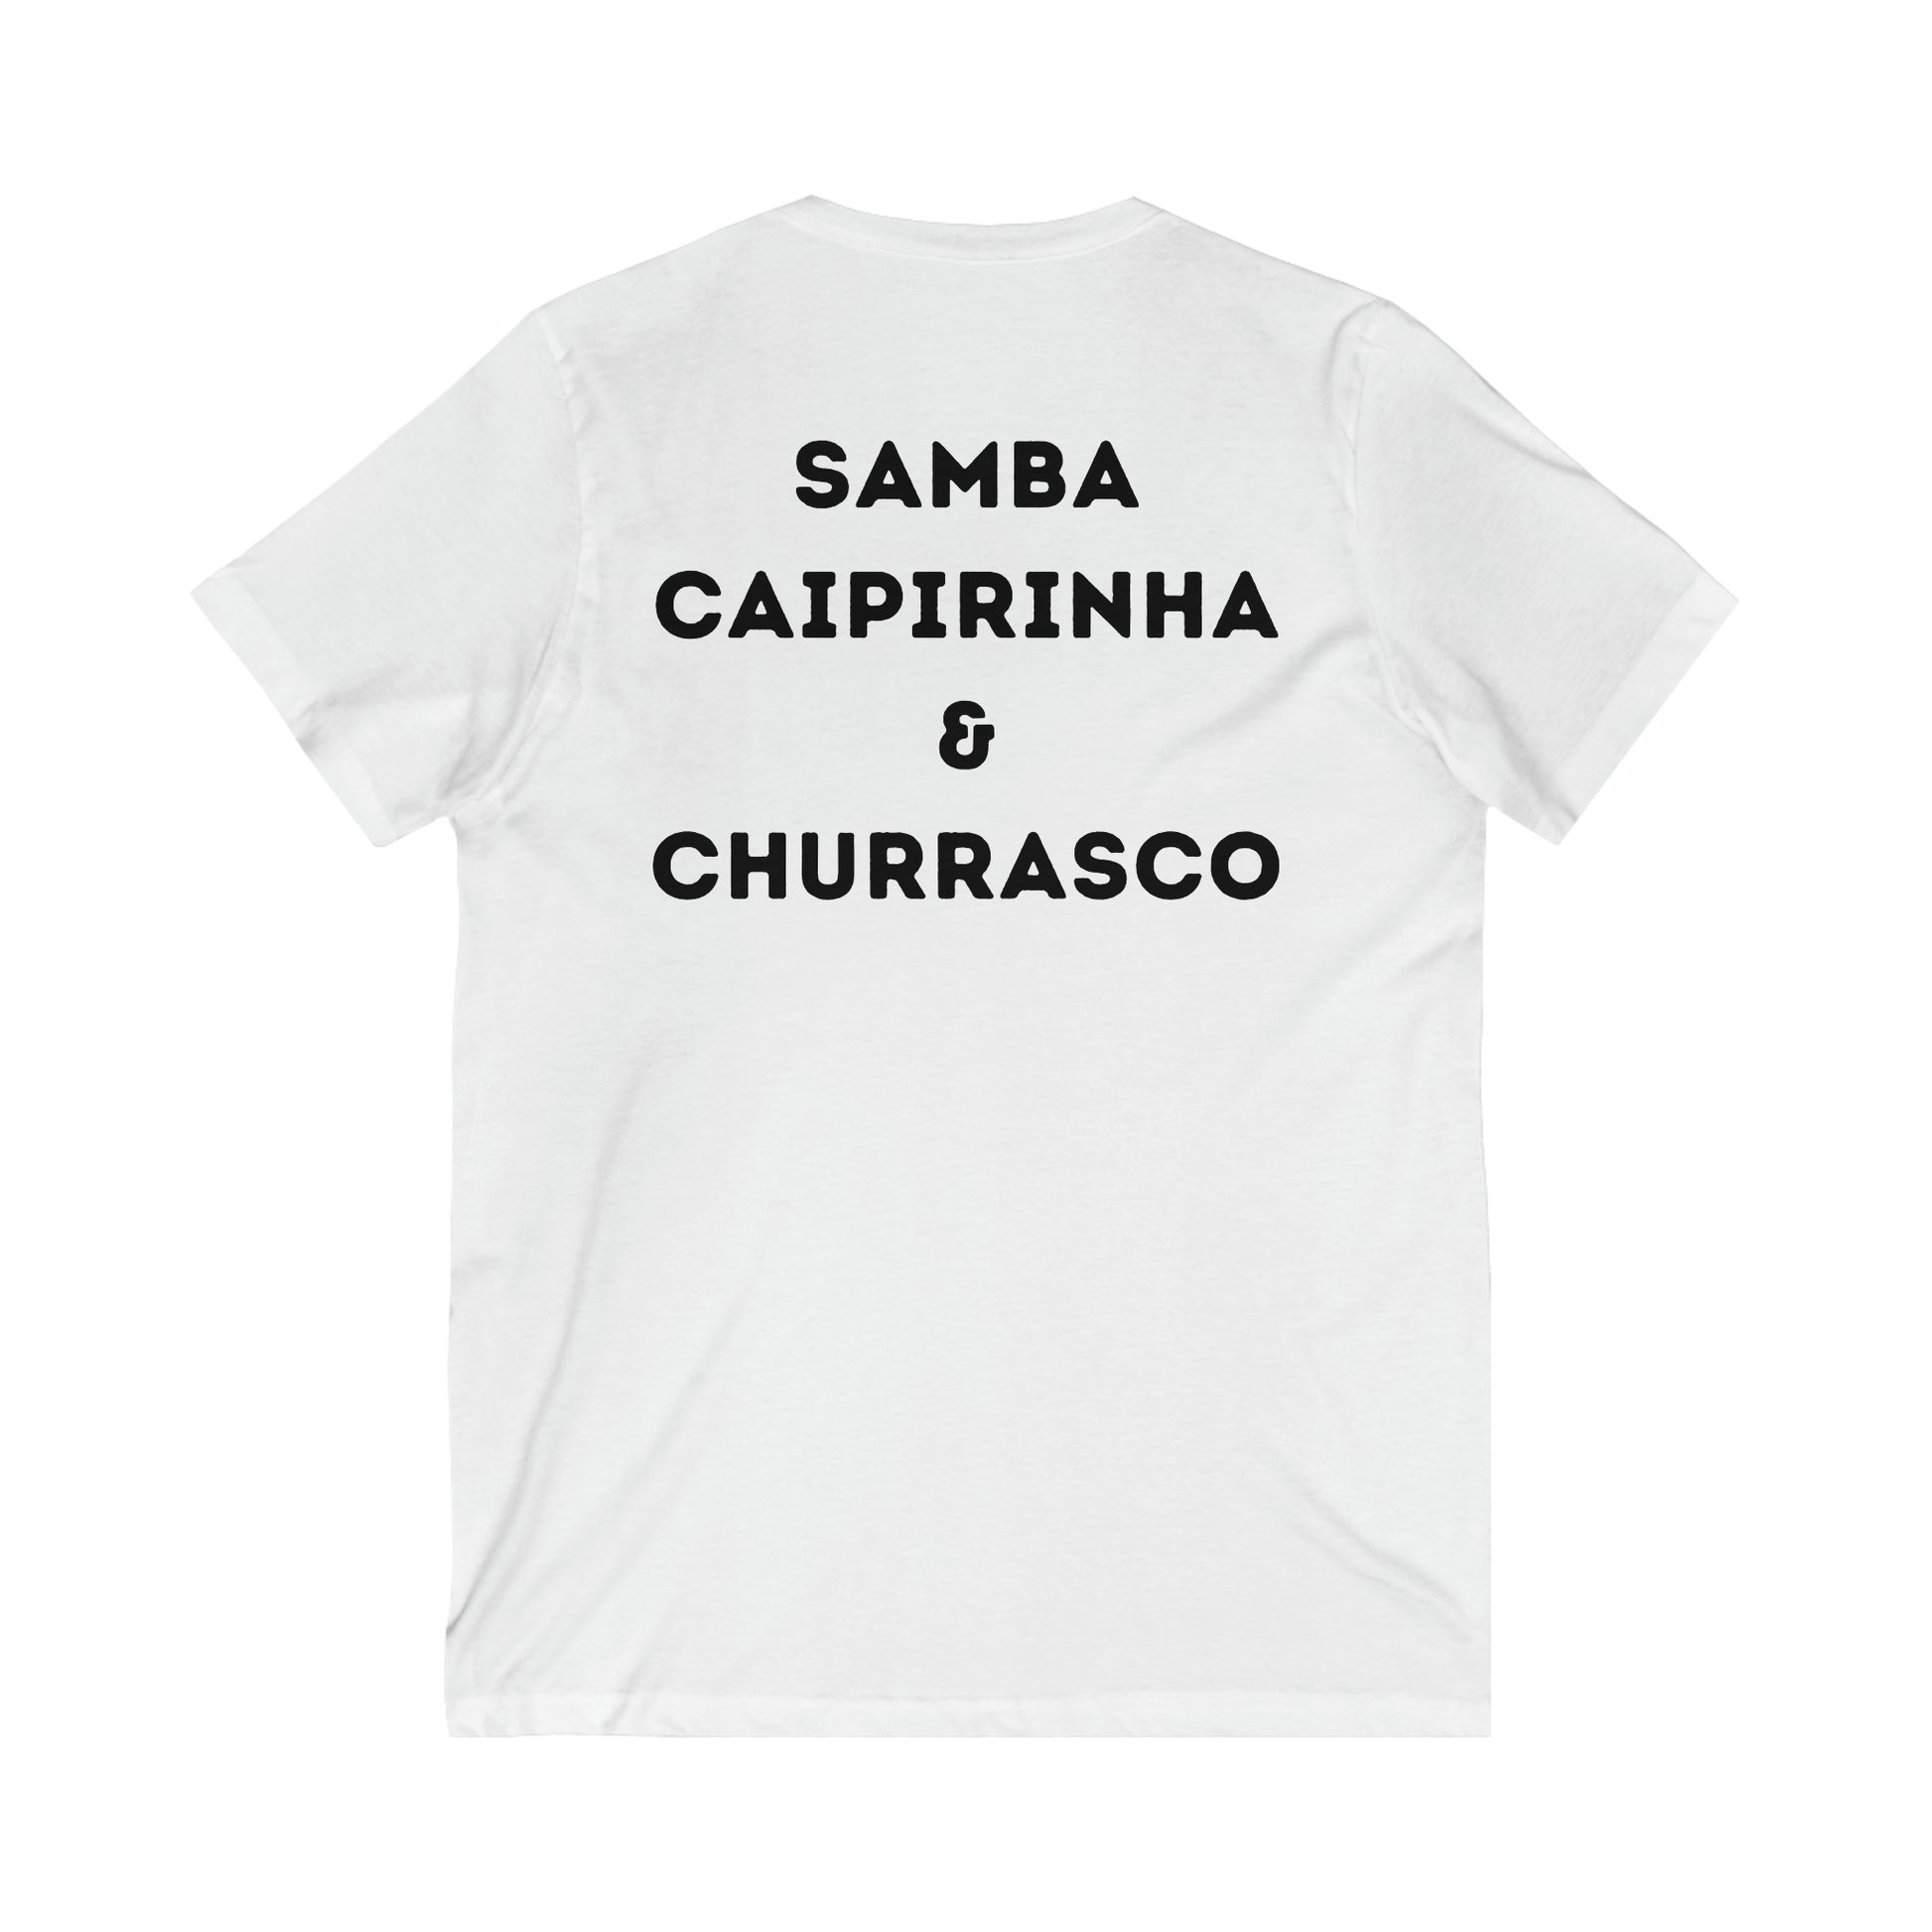 Powered By Samba, Caipirinha & Churrasco V Neck Brazilian Tee